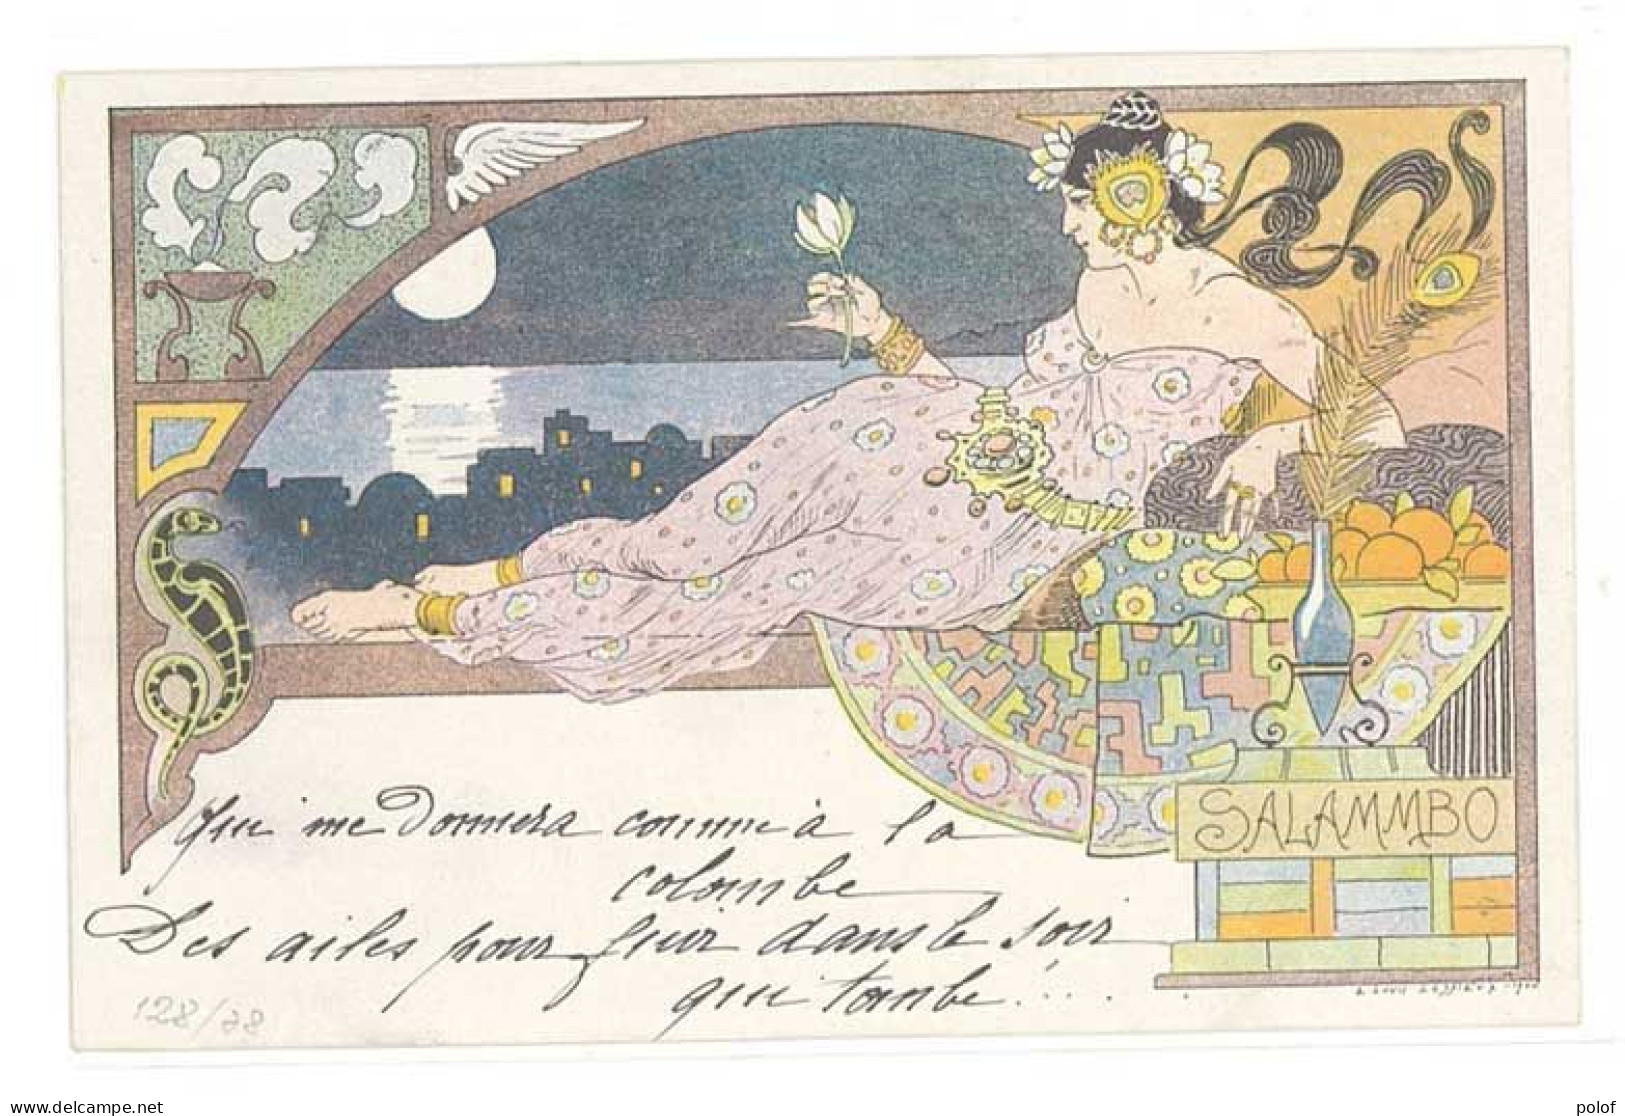 LESSIEUX - Femme Art Nouveau - Salambo - Bijoux Et Clair De Lune (1) - Lessieux